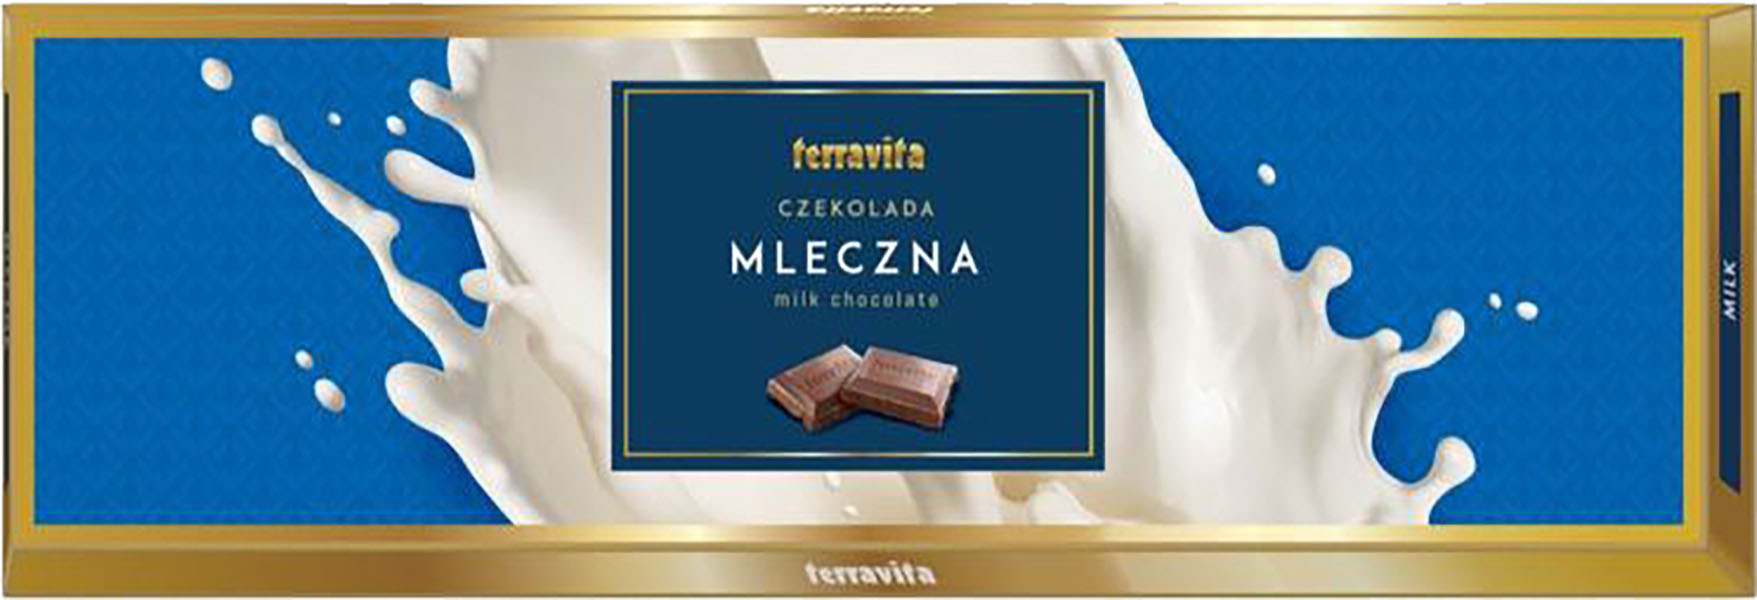 Slika za Čokolada mlečna Terravita 250g